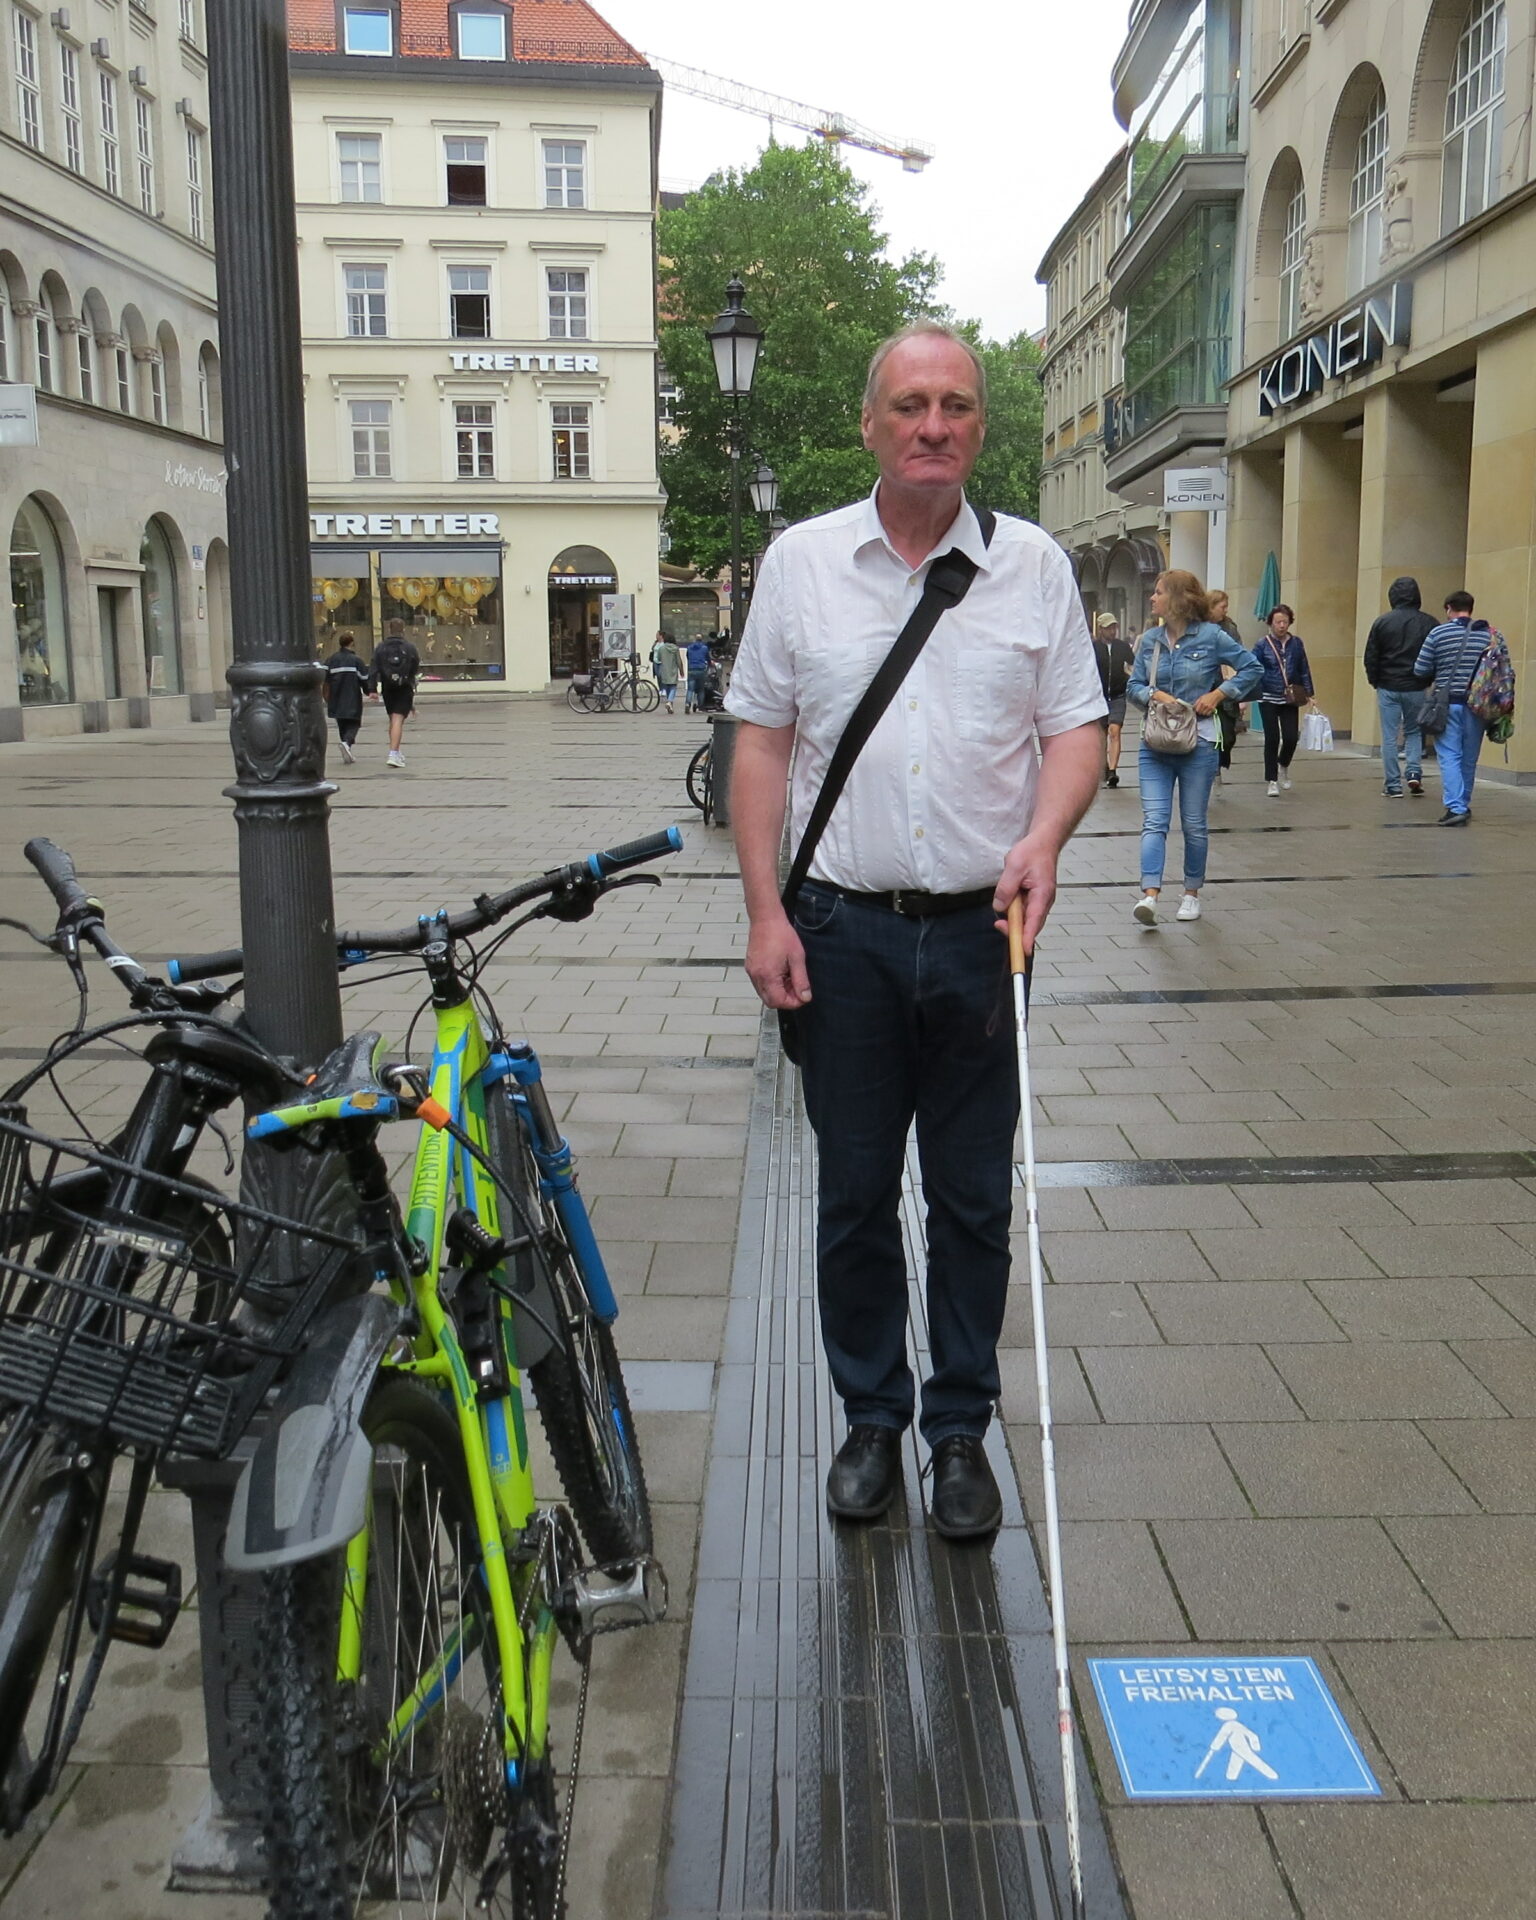 Ein Mann mit Gehstock steht auf dem Leitsystem in der Sendlinderstr. in München. Rechts auf dem Boden ist ein blauer Aufkleber mit Aufschrift "Leitsystem freihalten". Hintergrund: Geschäftshäuser Sendlingerstraße.